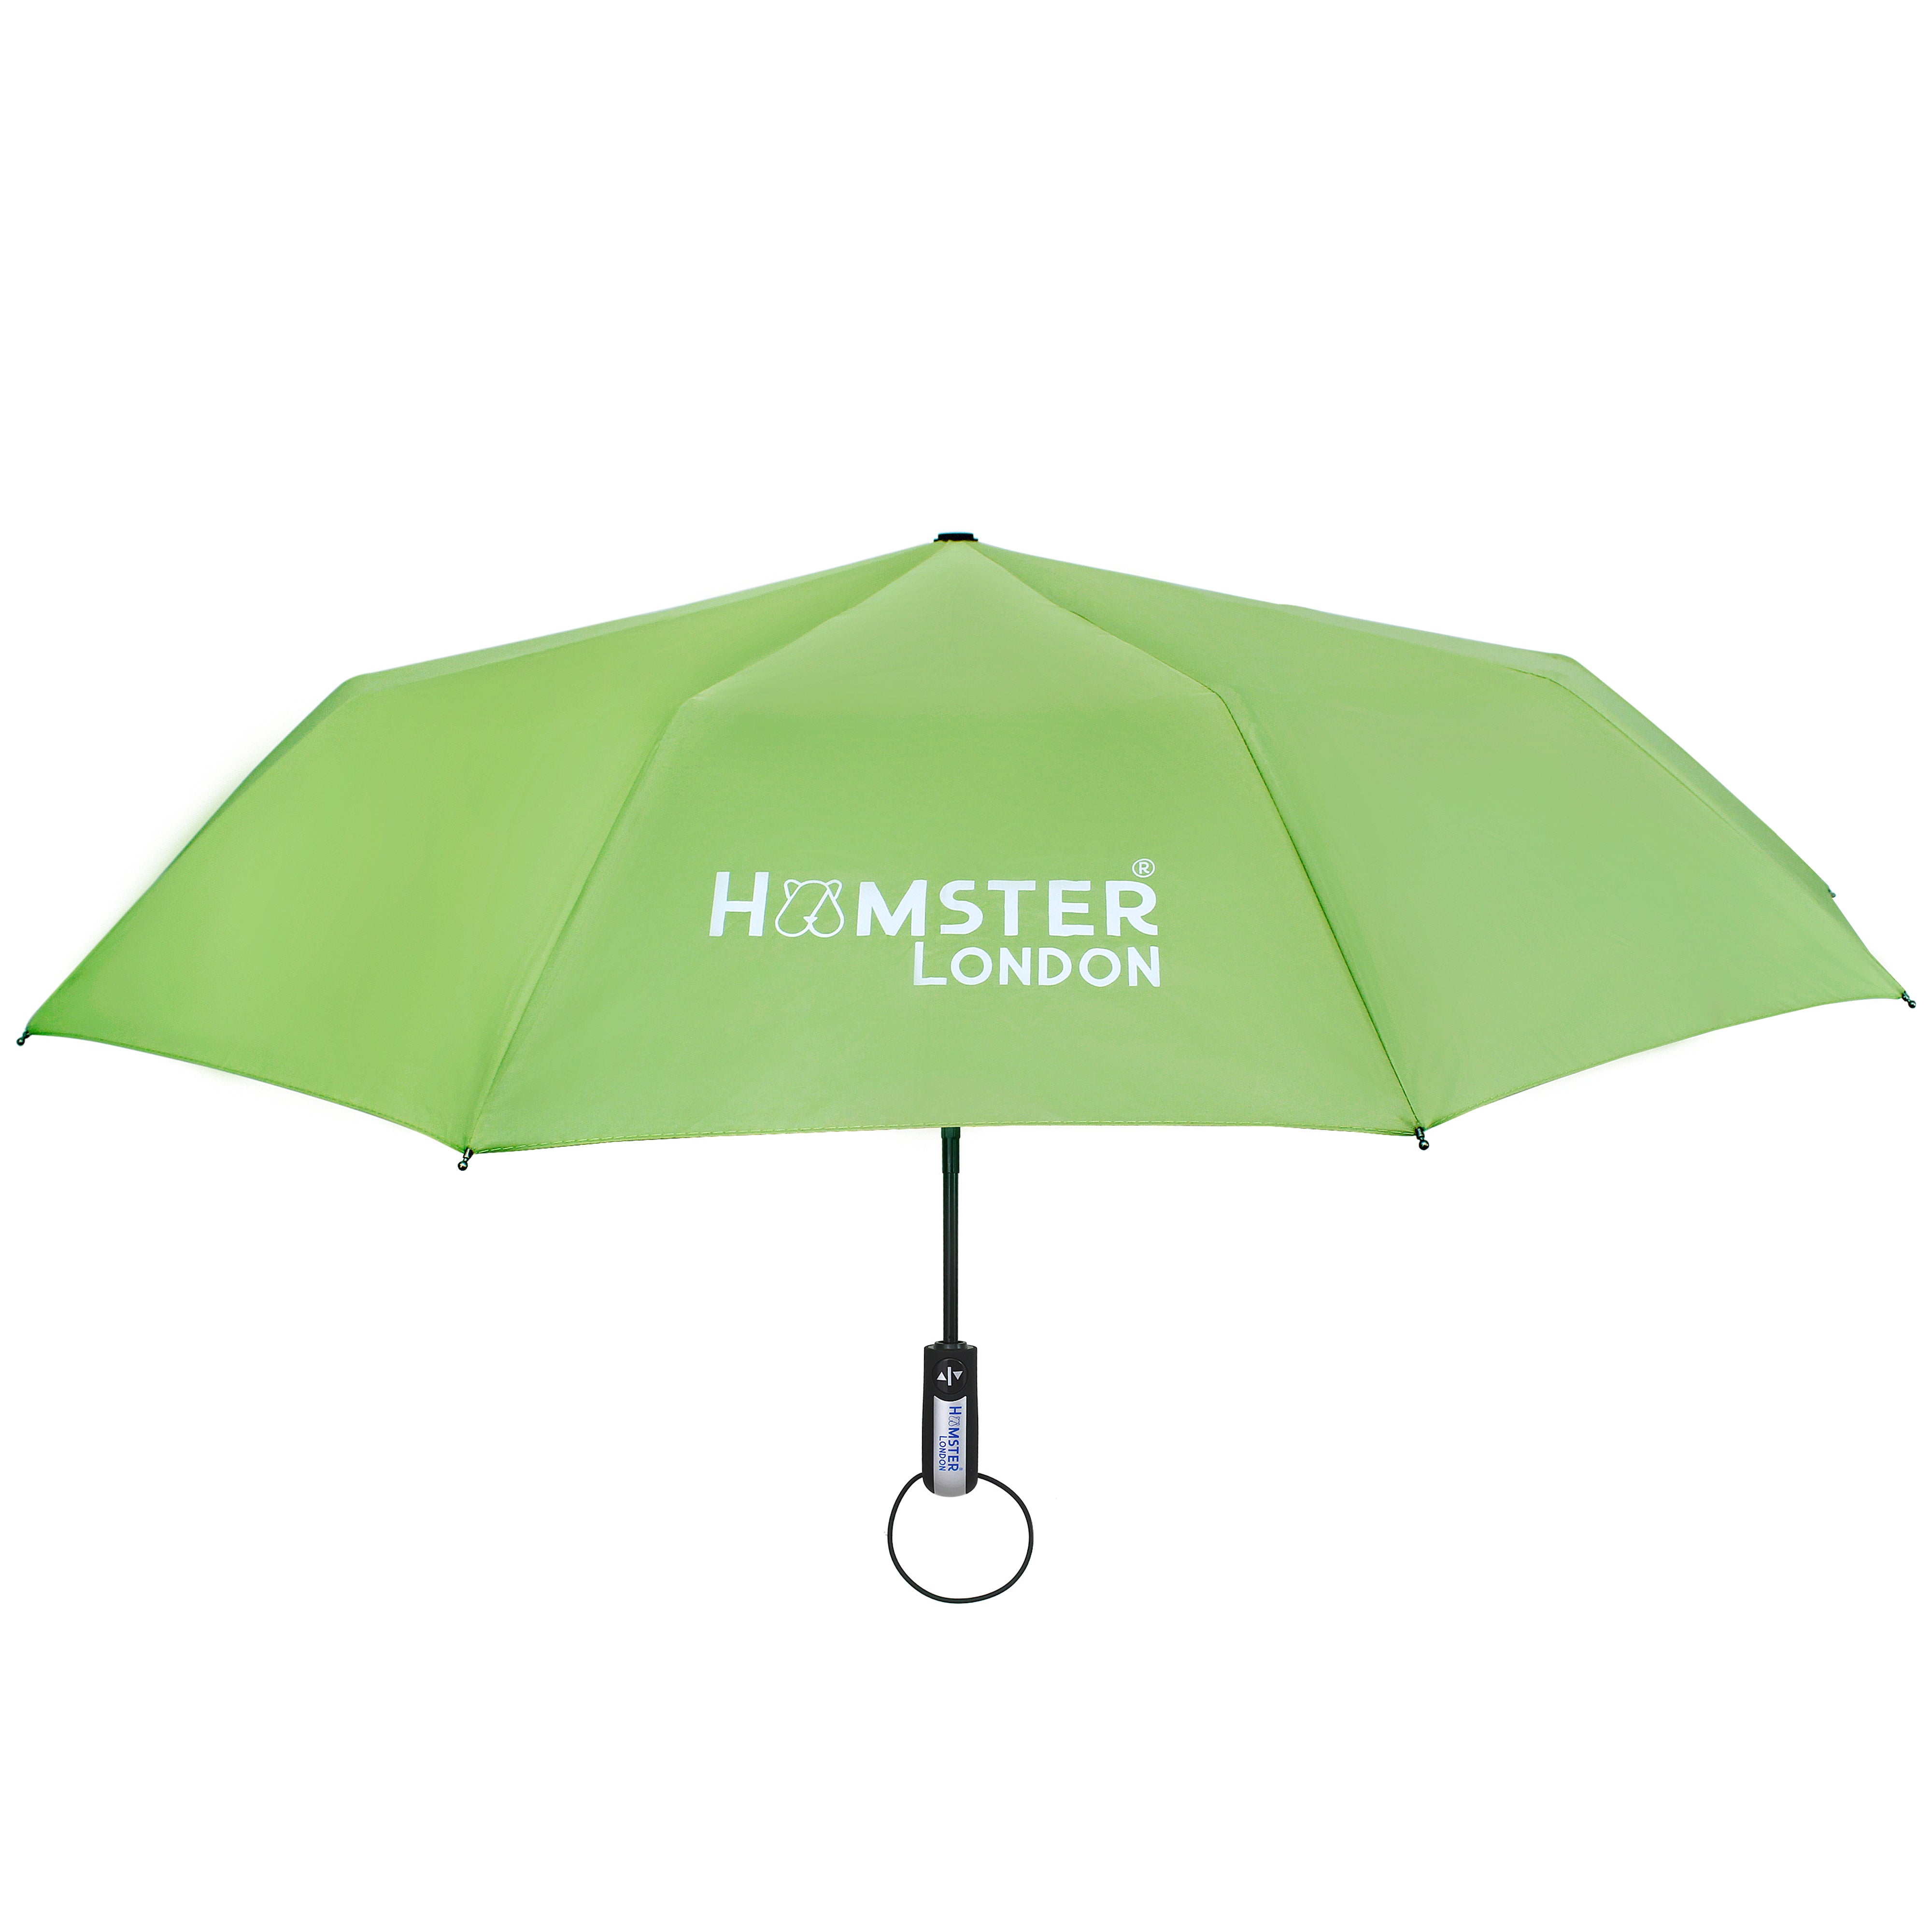 Automatic Open & Close Pocket Folding Umbrella (Green)